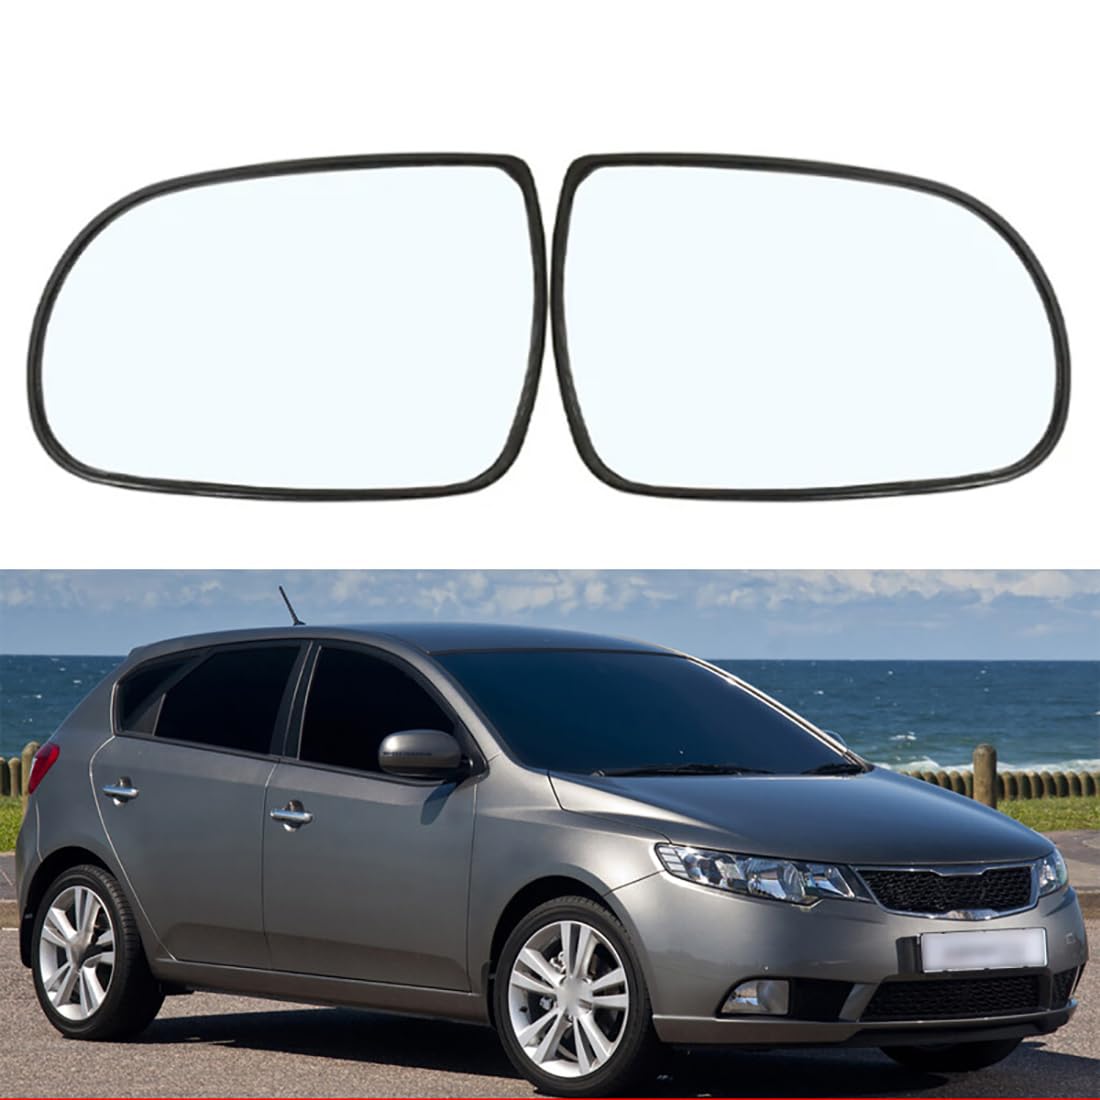 Austauschbarer Auto-Außenspiegel aus Beheizbarem Glas für Kia Cerato 2008-2013,beheizbarer Rückspiegel für Fahrer und Beifahrer Links/rechts,B-Right von YujieNB